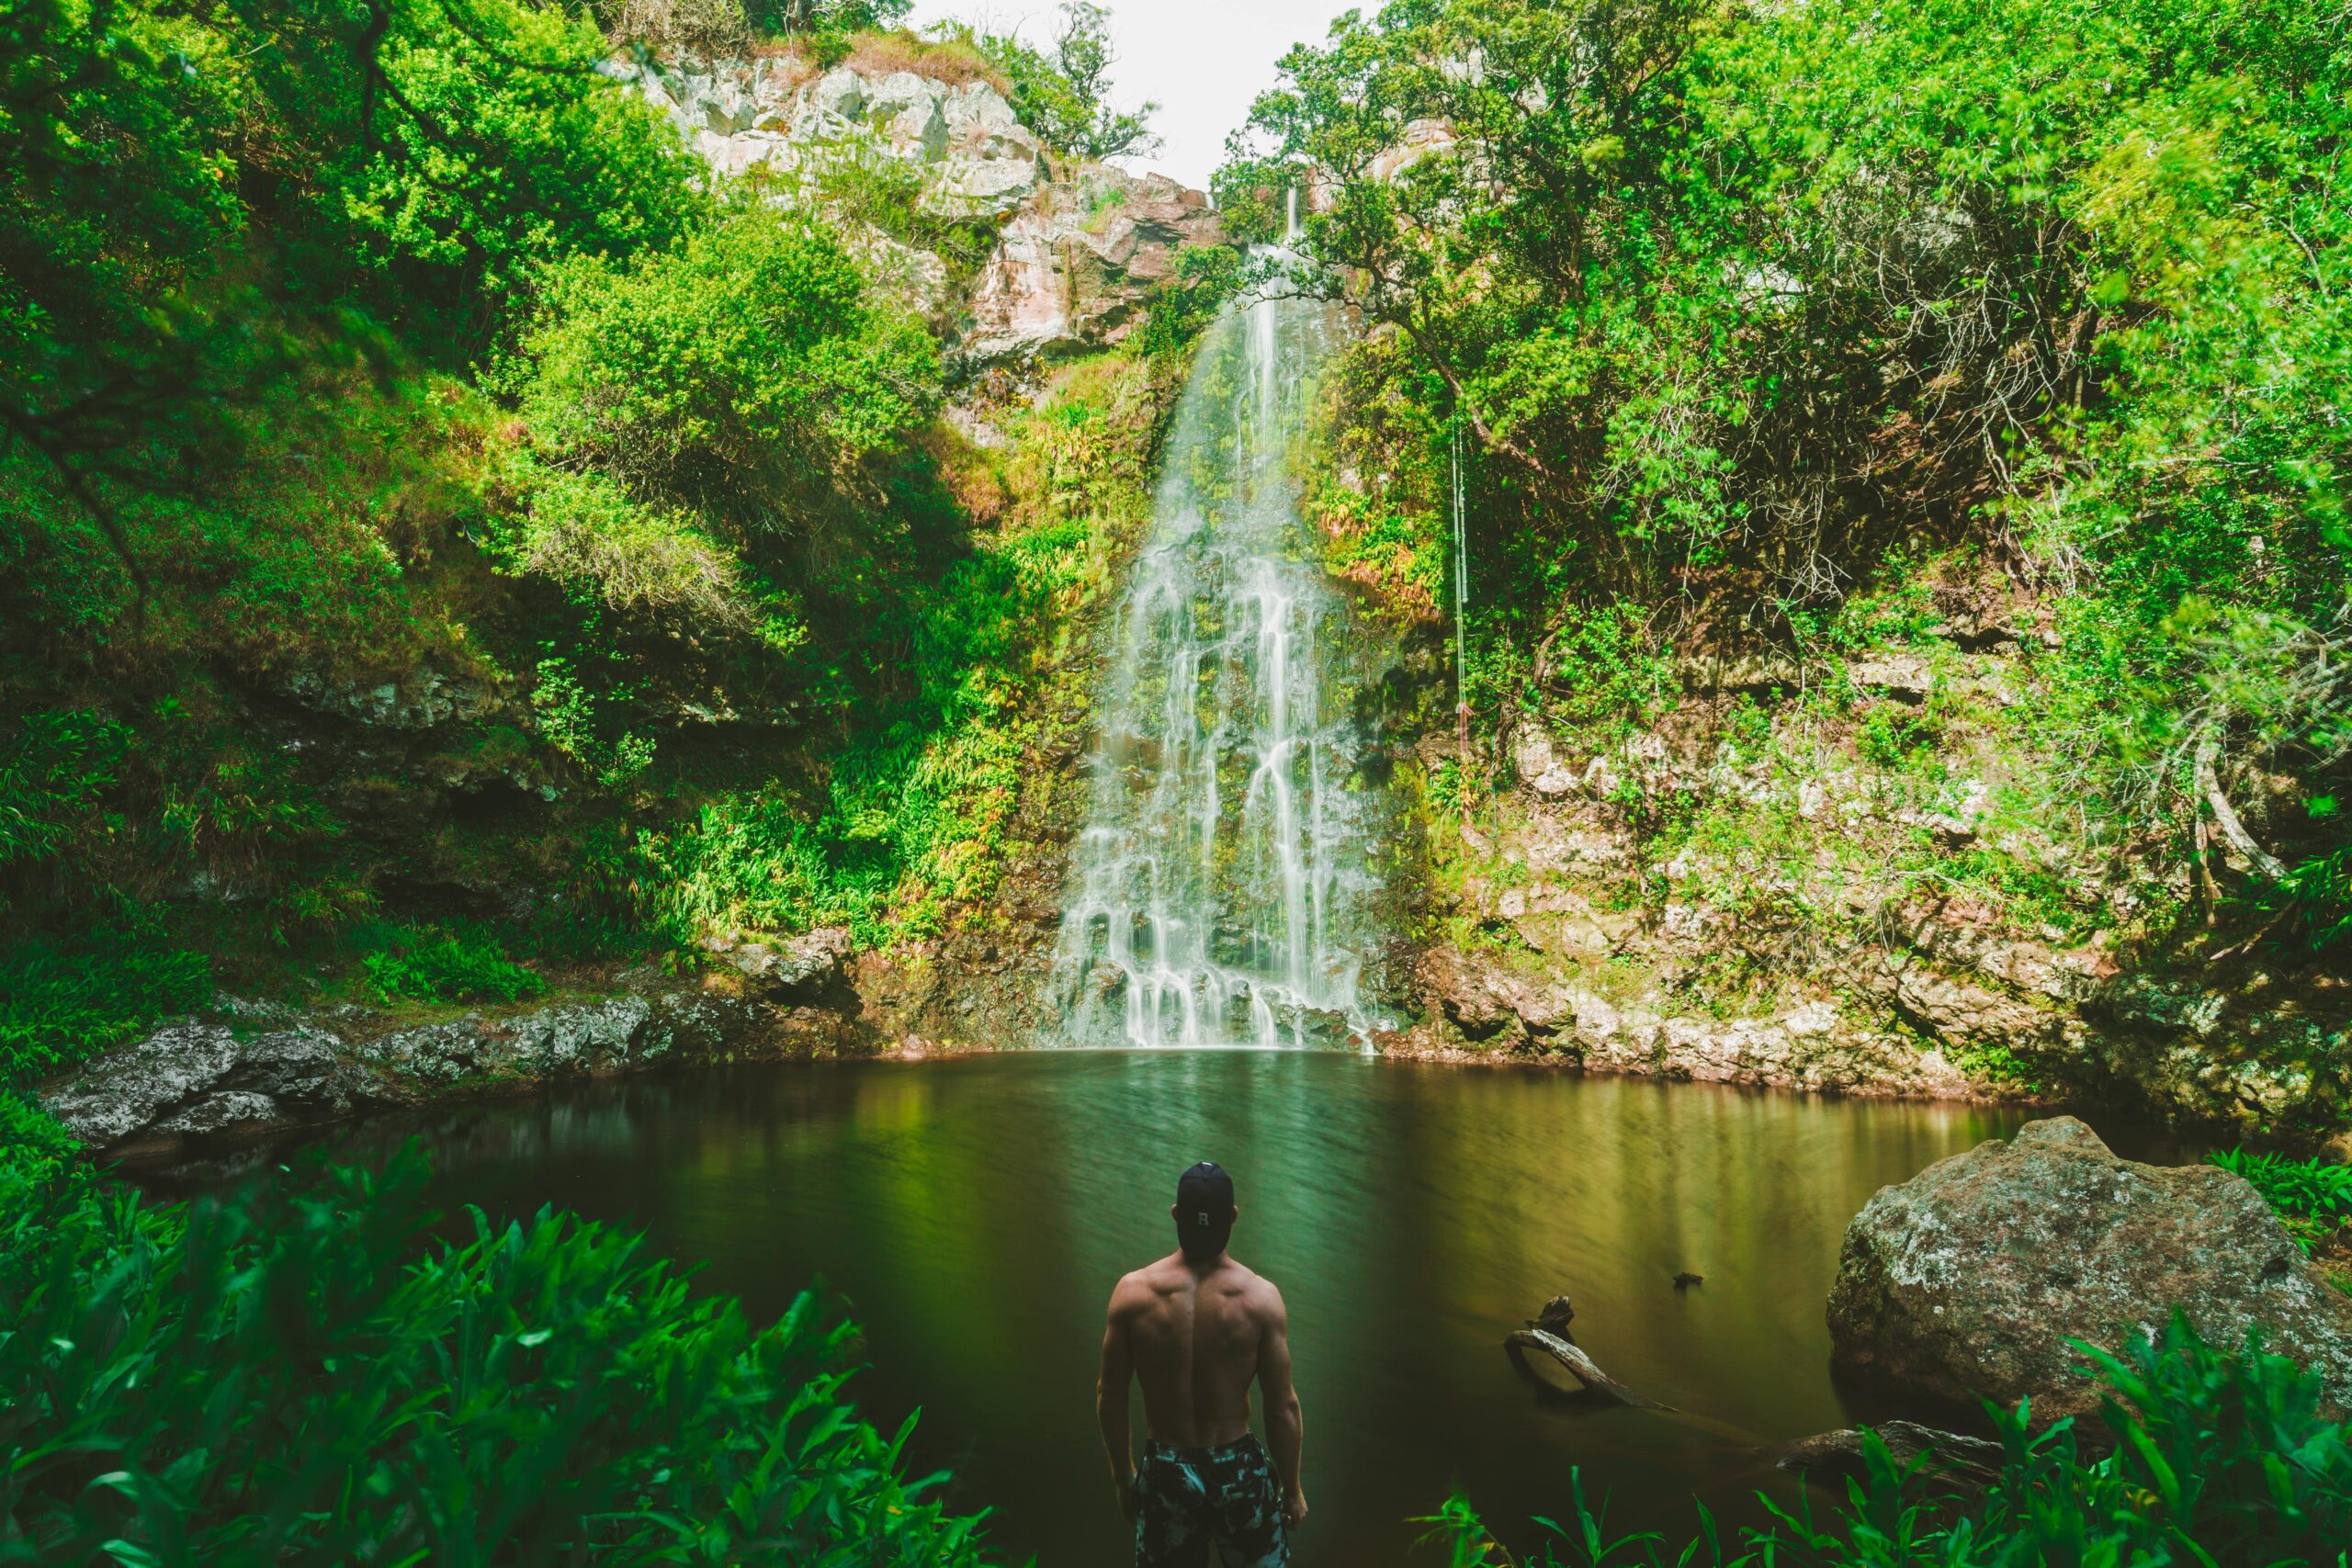 Man Adoring waterfall and a small lake